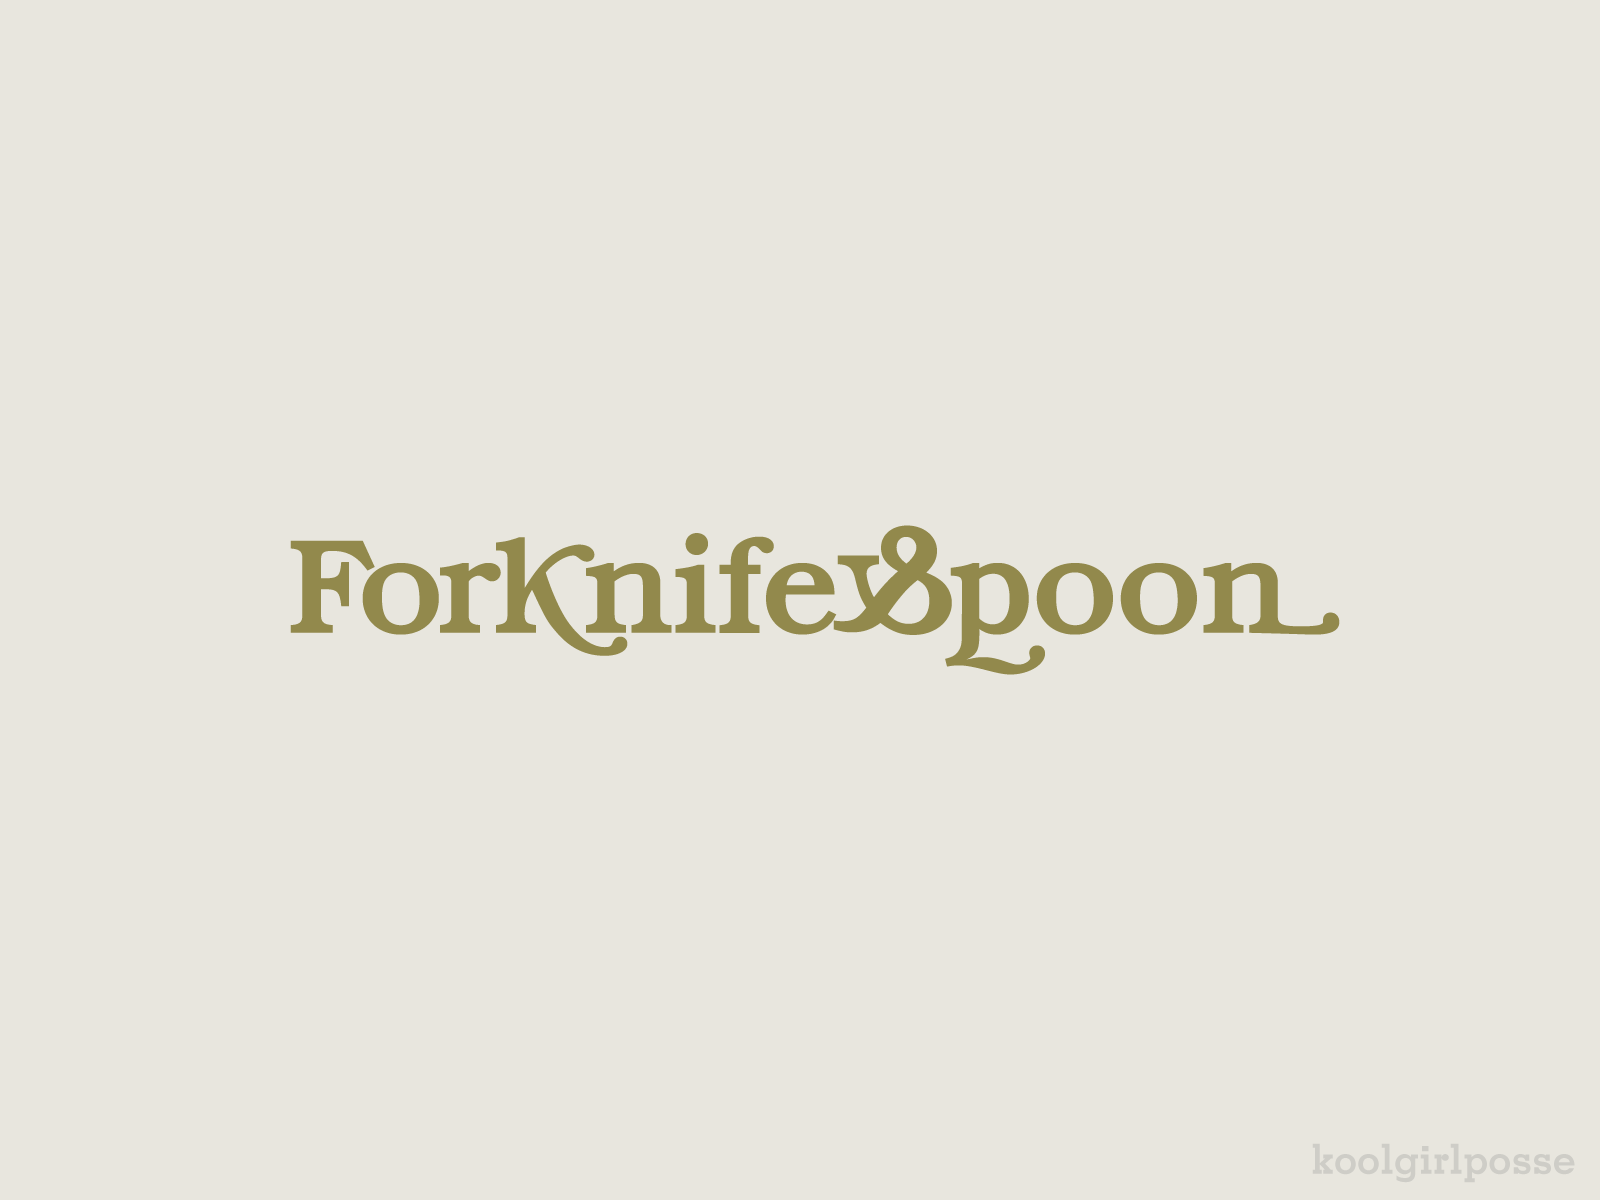 Fork Knife & Spoon branding design logo typography